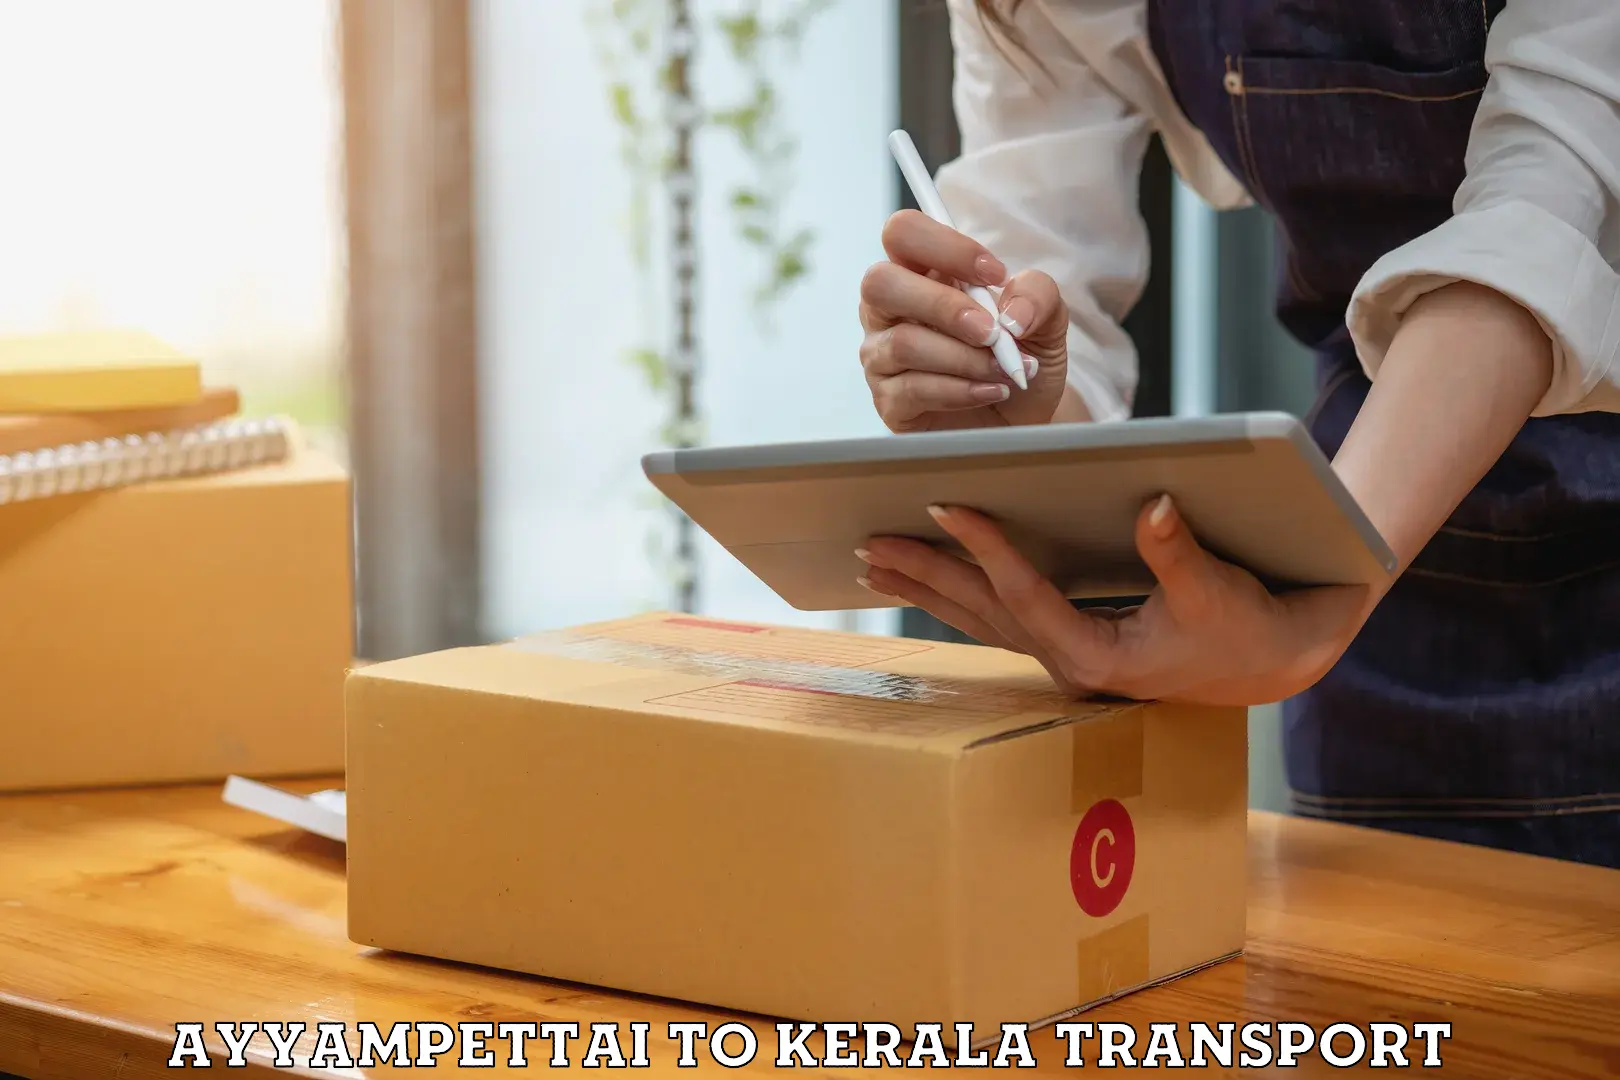 Delivery service Ayyampettai to Kothamangalam